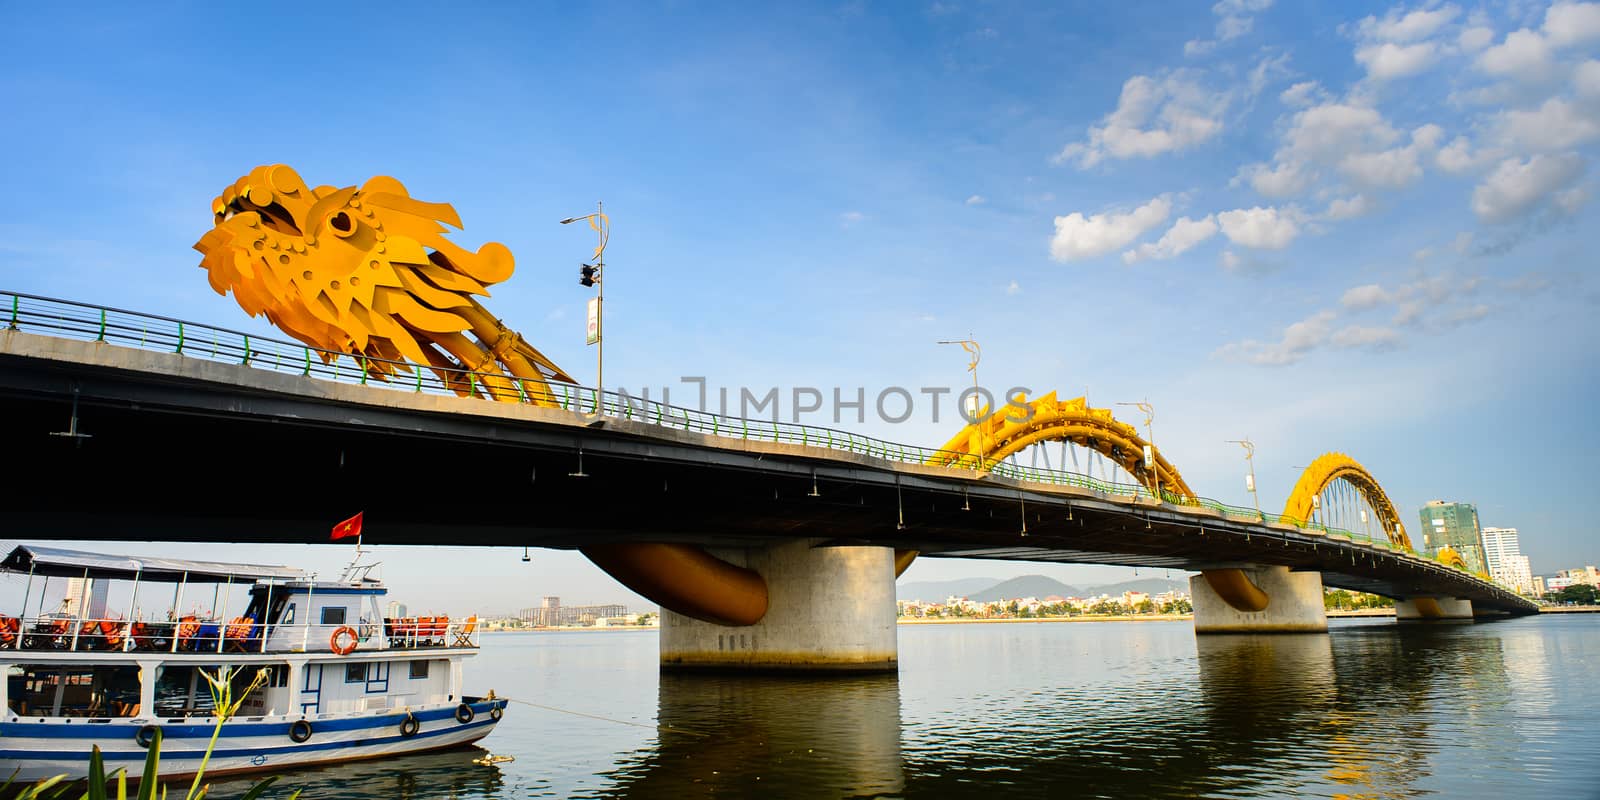 Danang city, Vietnam in August 15th 2014: The Dragon bridge cross Han river